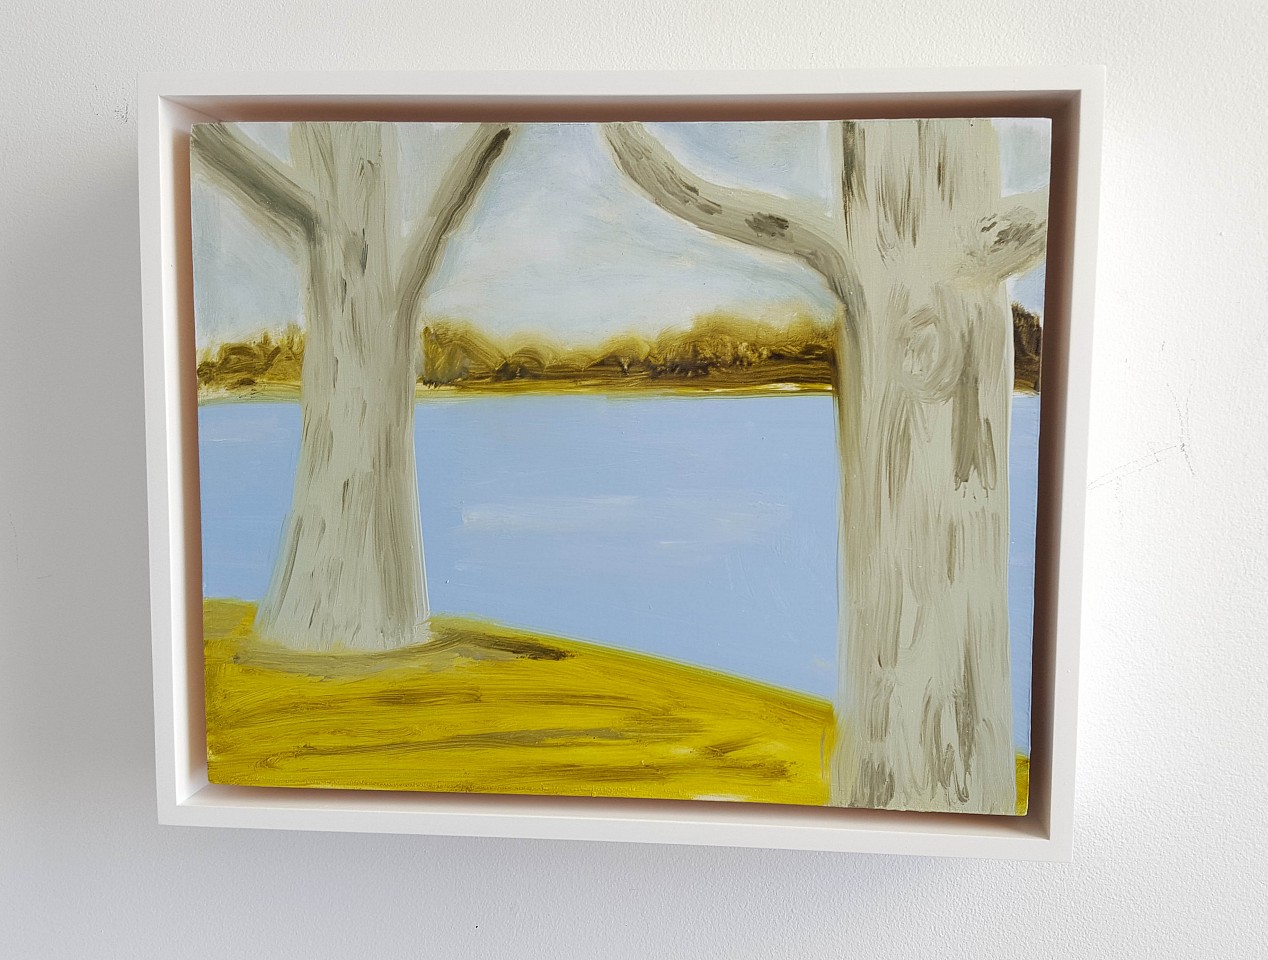 Kathryn Lynch
Trees, 2015
lyn616
oil on panel, 8 x 10 inches